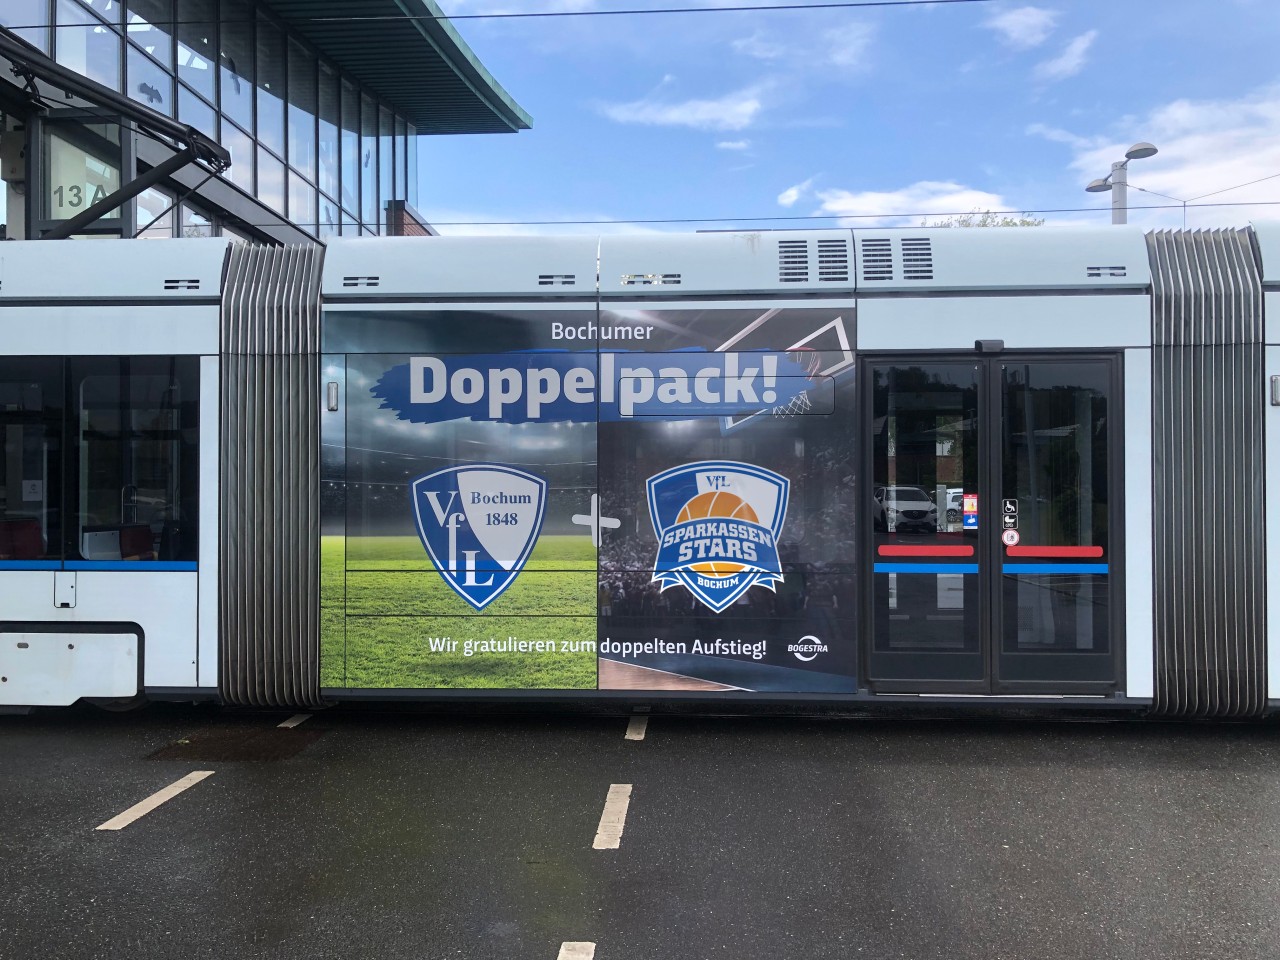 Bochum feiert den Aufstieg des VfL mit einer speziellen Straßenbahn